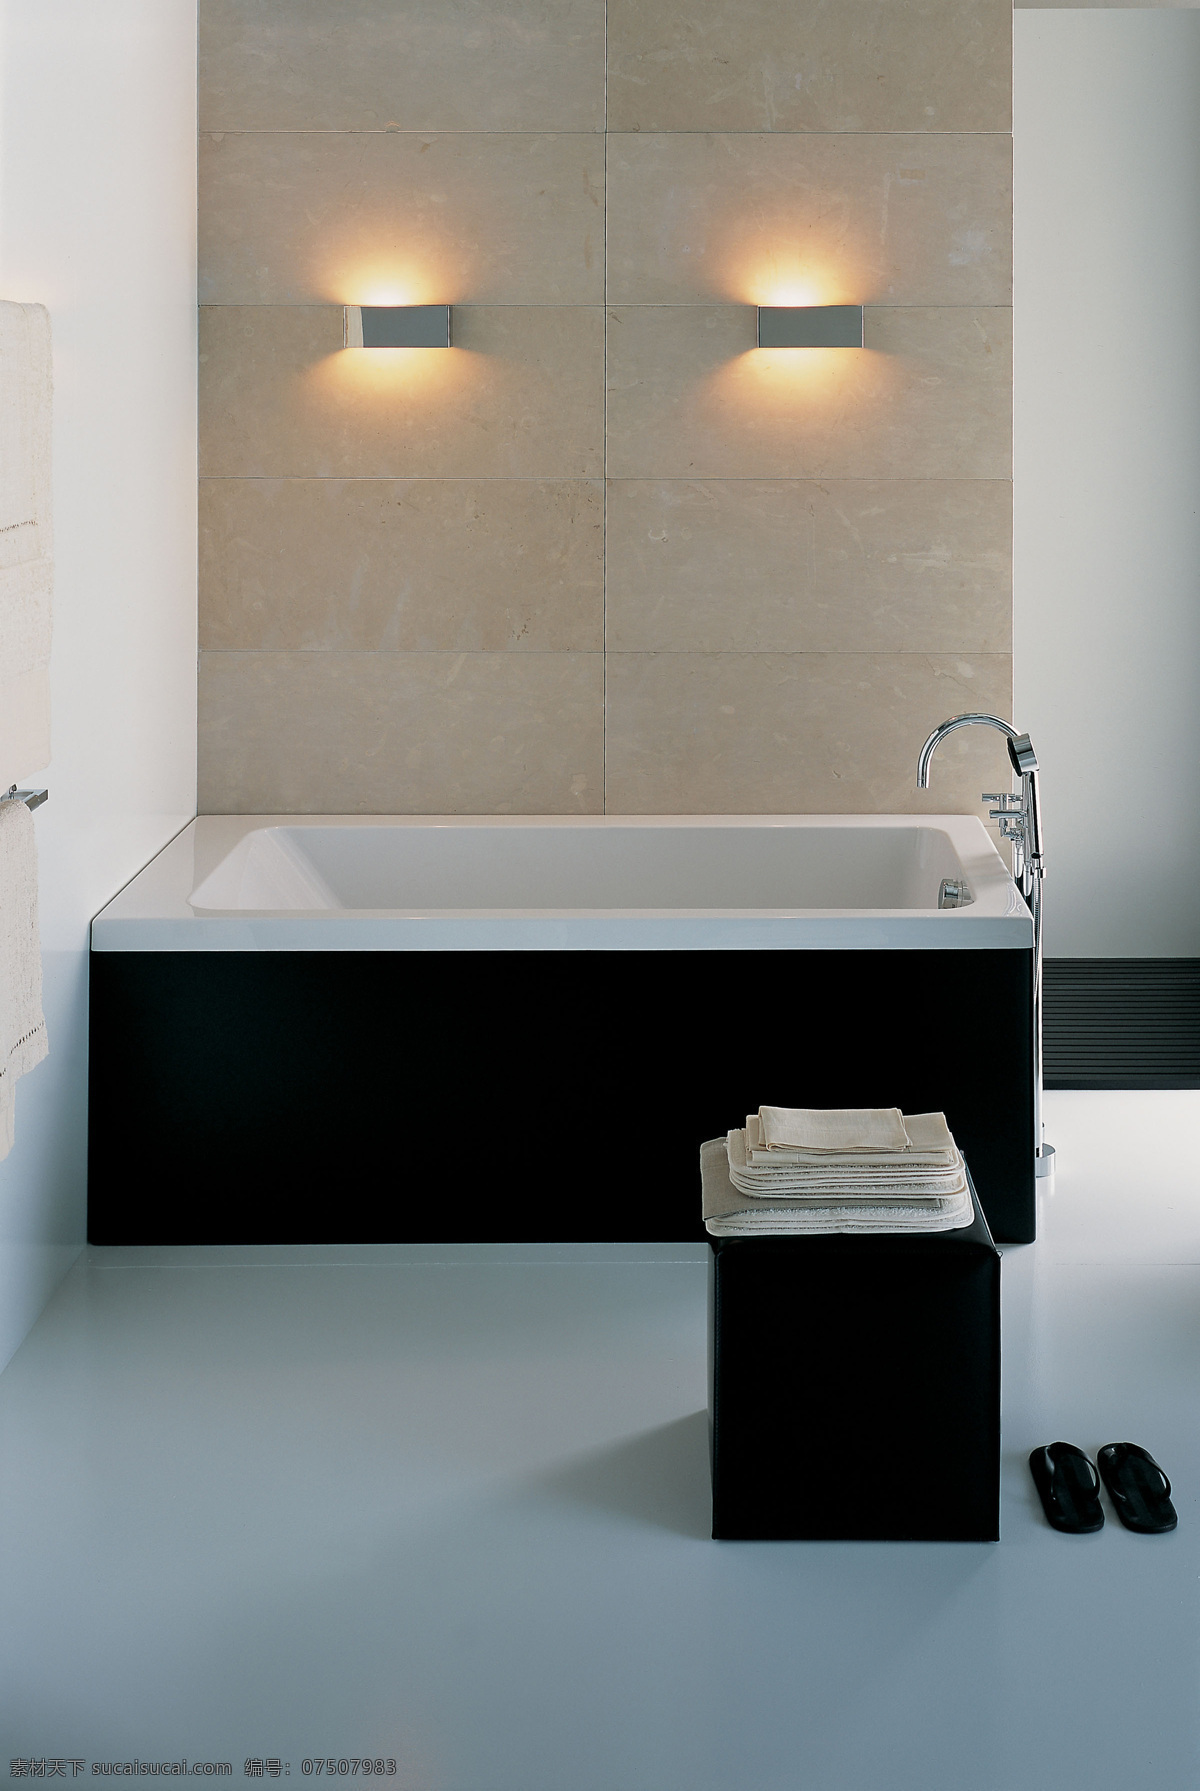 浴缸 高清 家居 家居生活 洁具 生活百科 特写 卫浴 装饰素材 室内设计